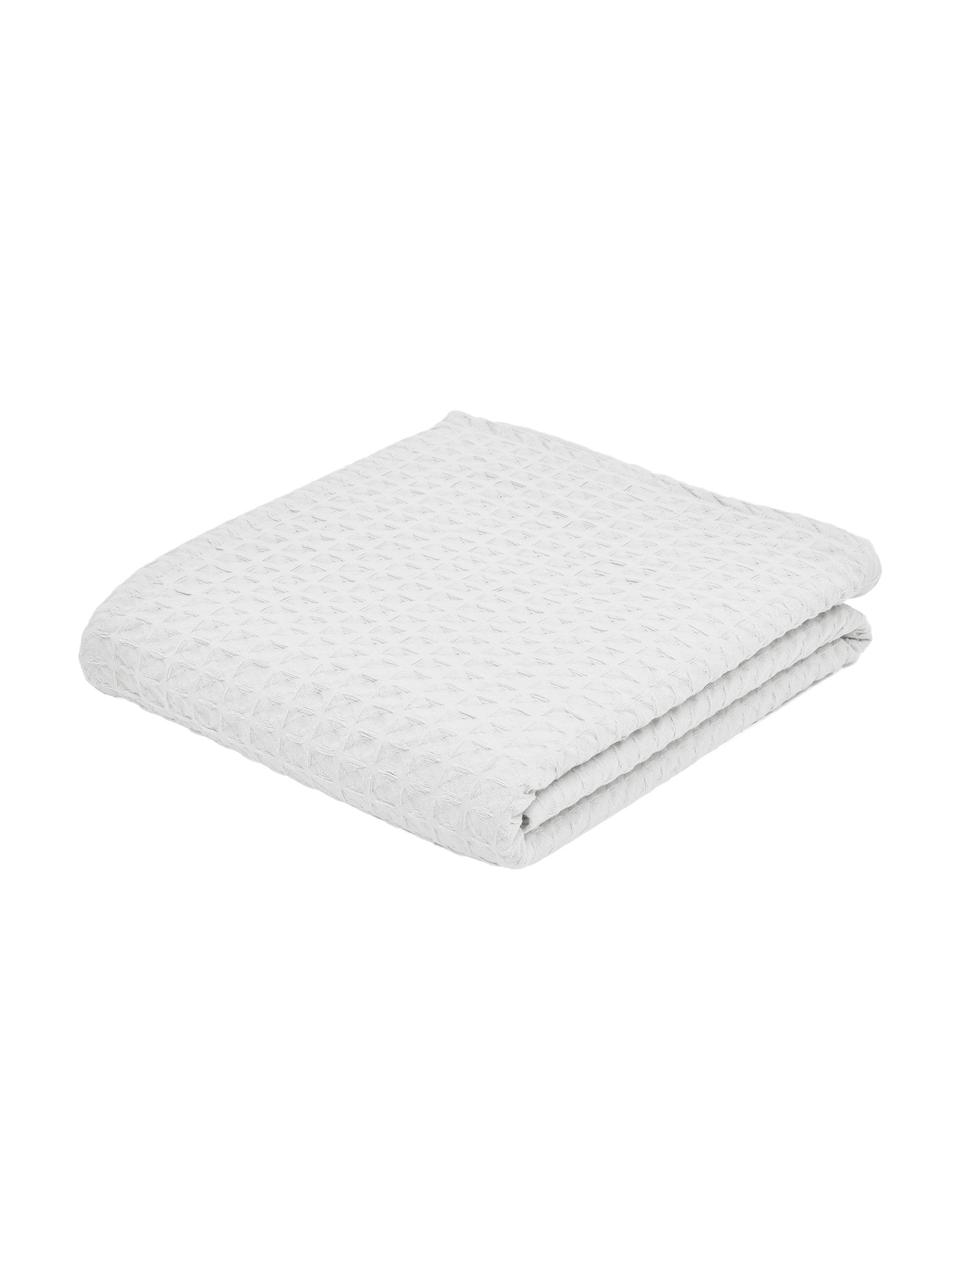 Waffelpiqué-Tagesdecke Panal in Weiß, 100% Baumwolle, Weiß, B 180 x L 260 cm (für Betten bis 140 x 200 cm)